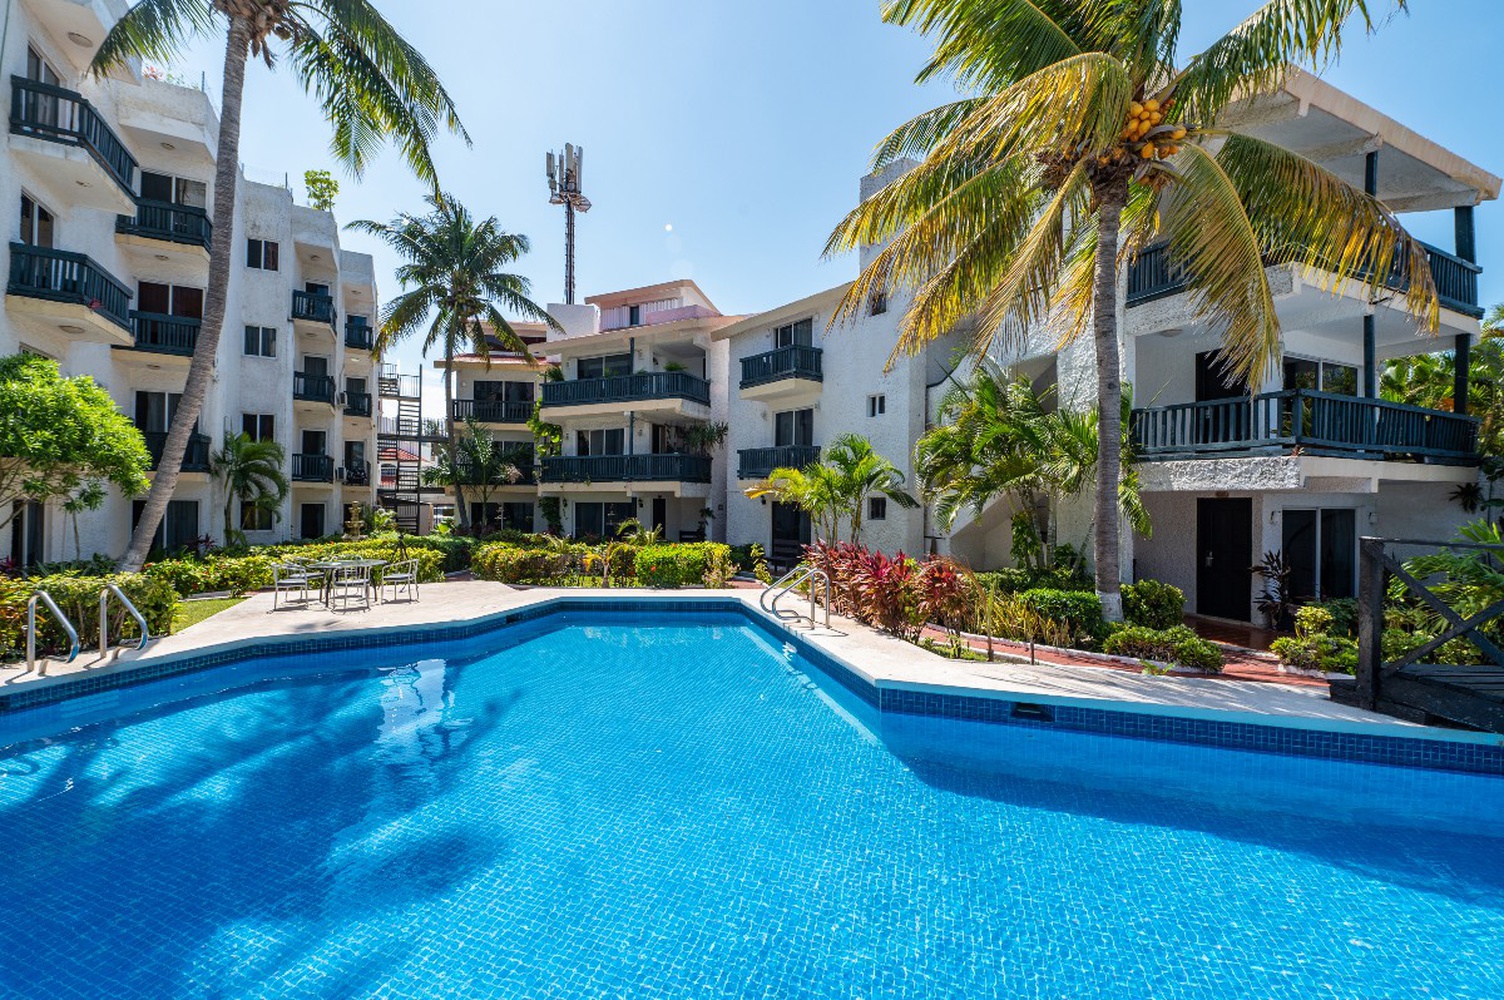 The best stay in the  hotel zone of cancun  Hotel Imperial Laguna Faranda Cancún Cancun